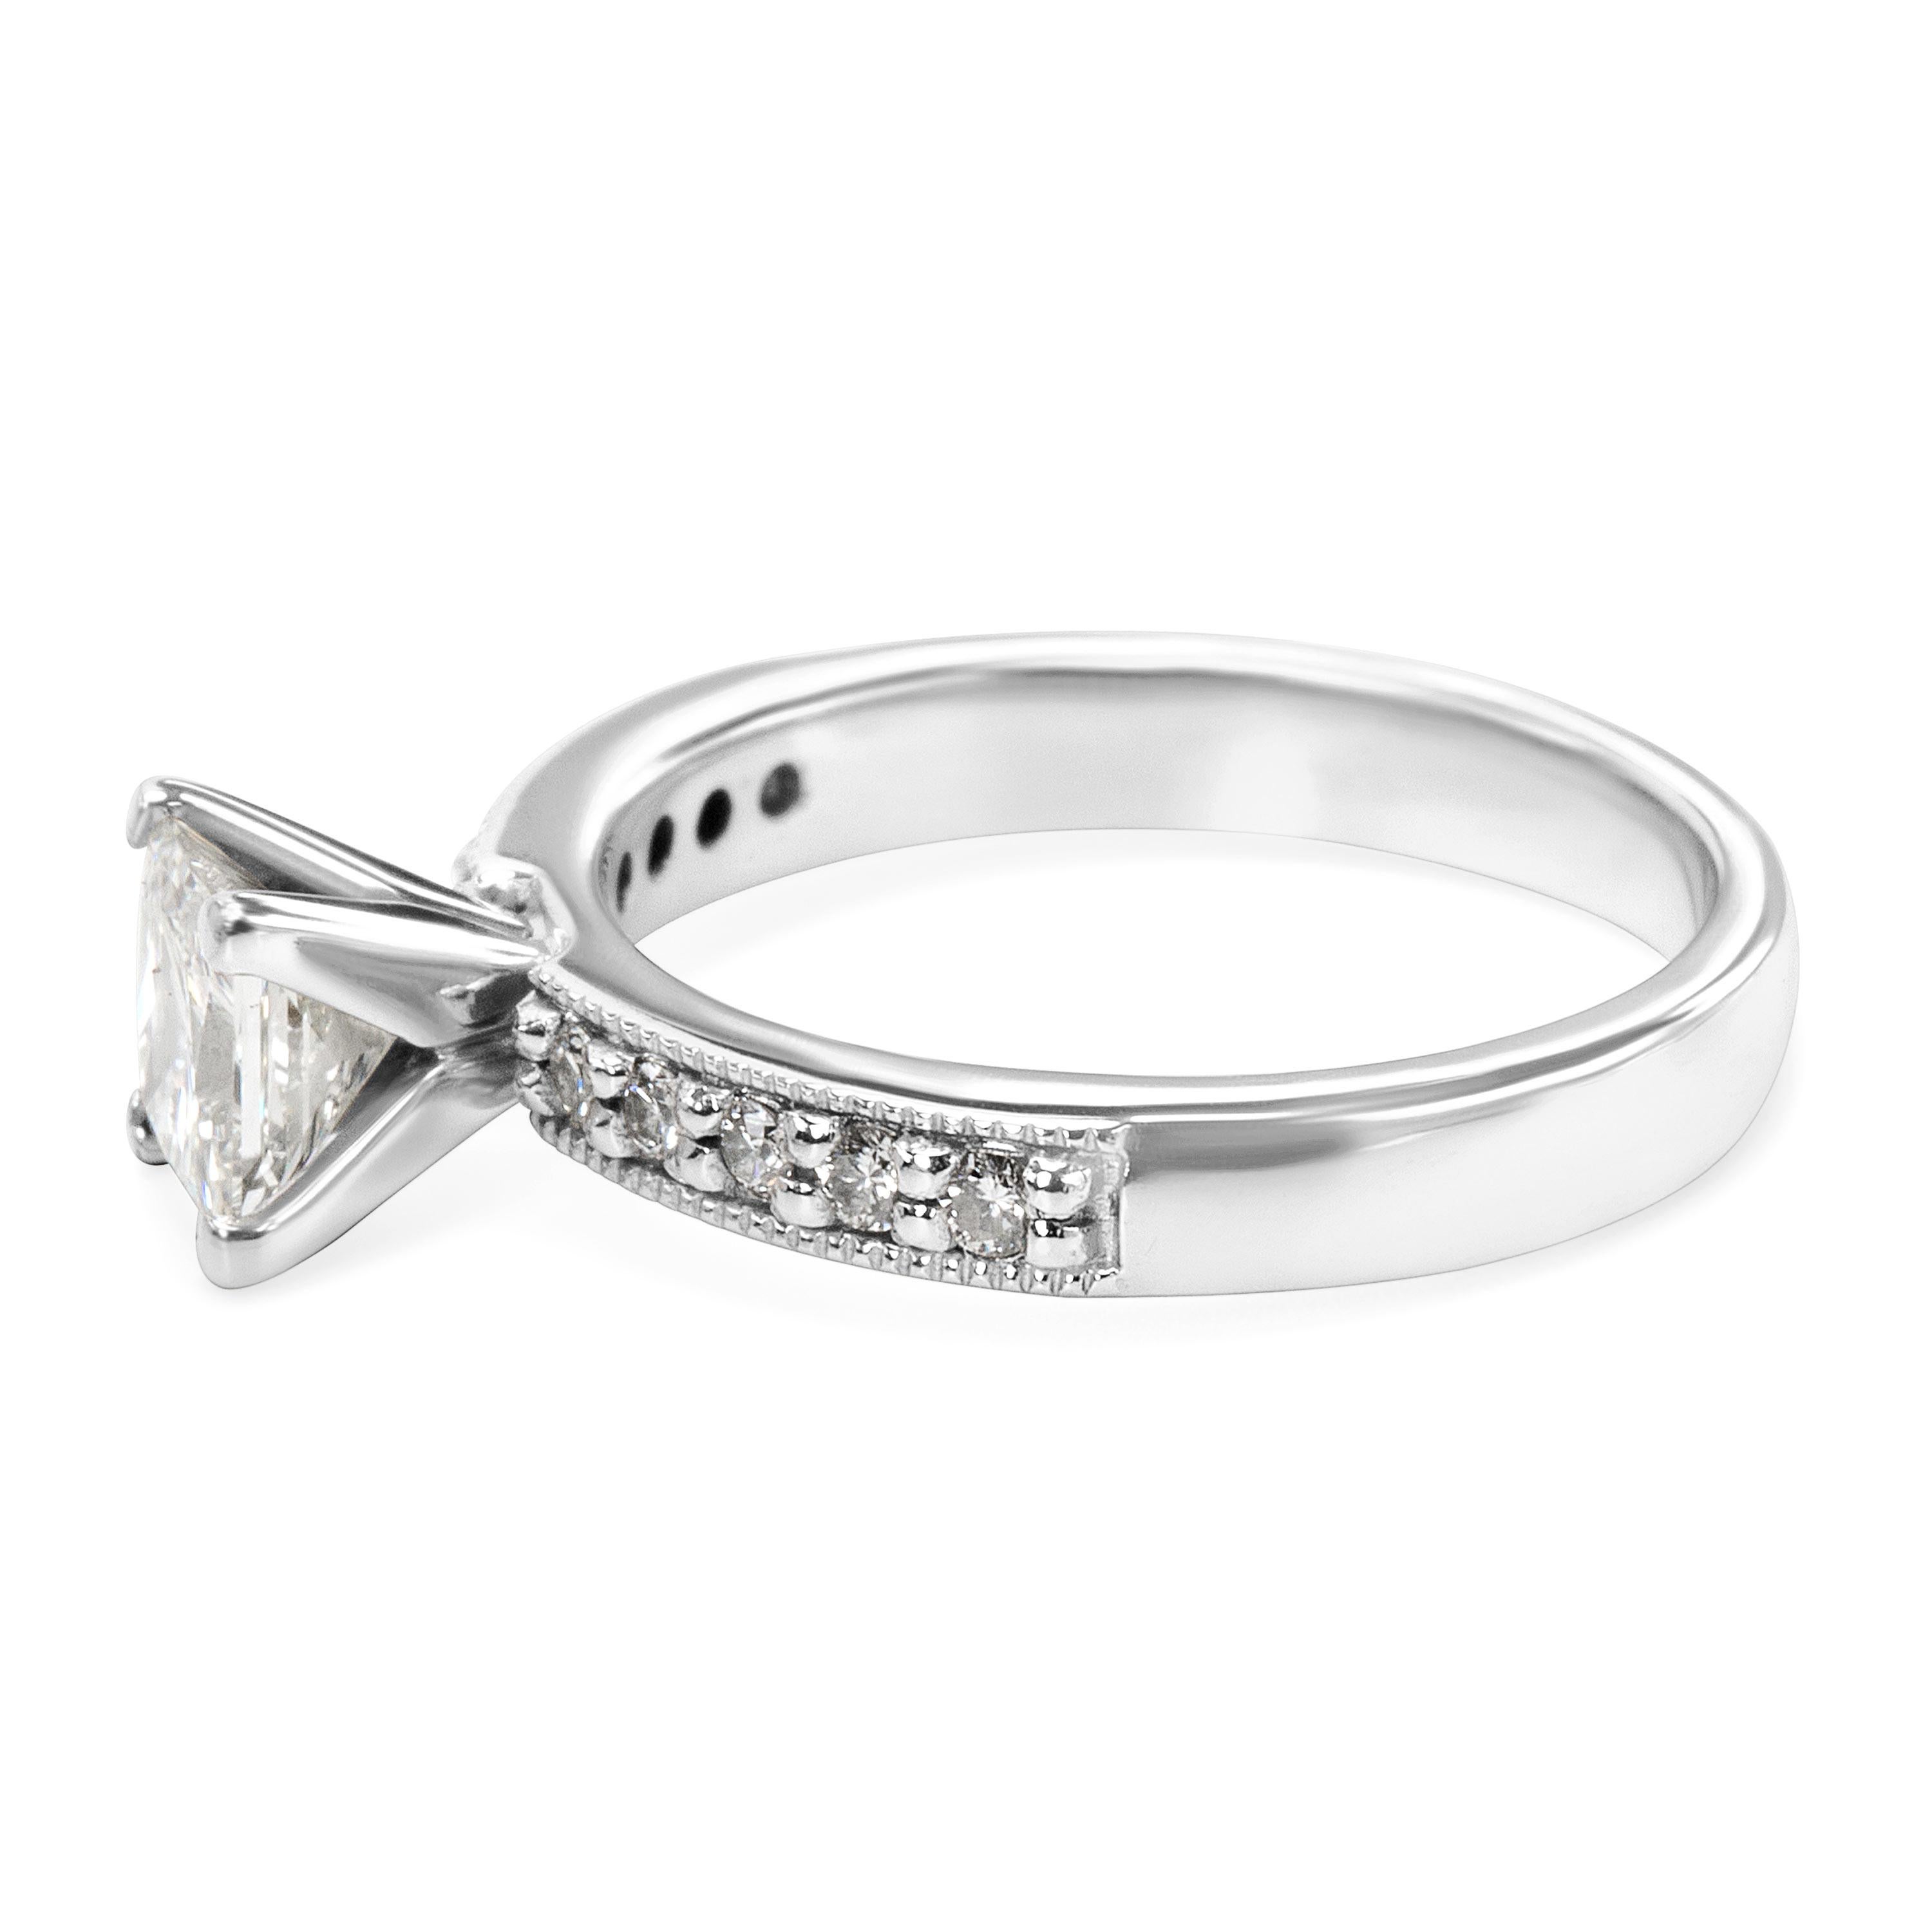 GIA Certified Princess Diamond Engagement Ring in Platinum 1.12 Carat Ring 1